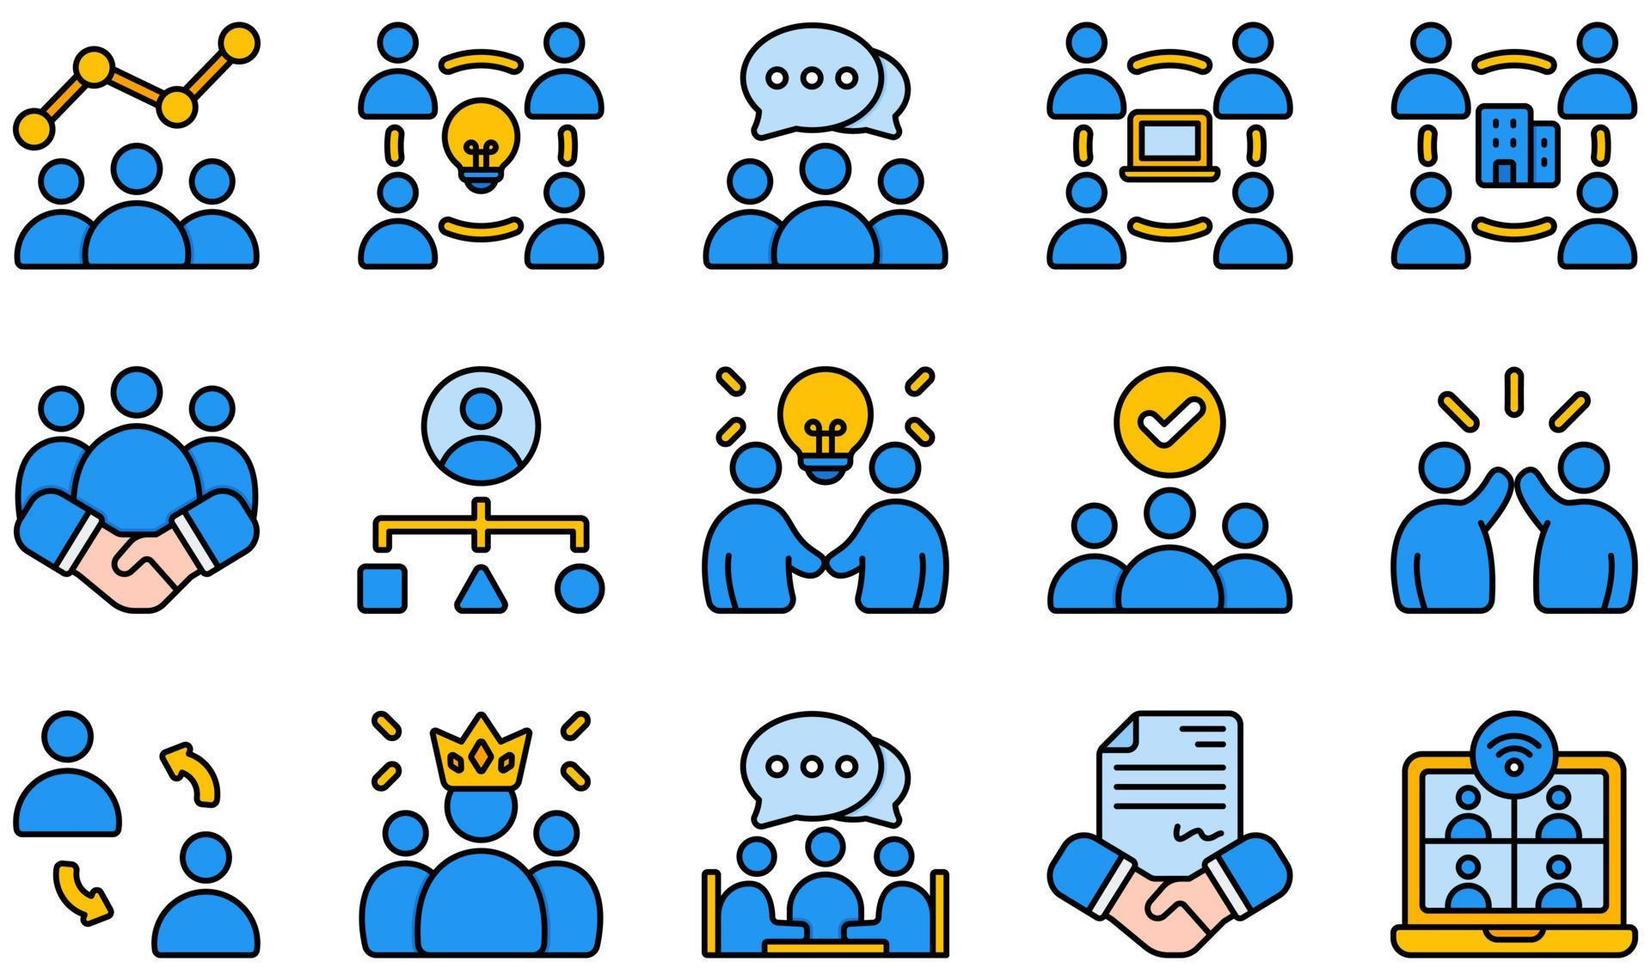 conjunto de ícones vetoriais relacionados ao trabalho em equipe. contém ícones como brainstorm, empresa, cooperação, coordenação, colega de trabalho, parceria e muito mais. vetor